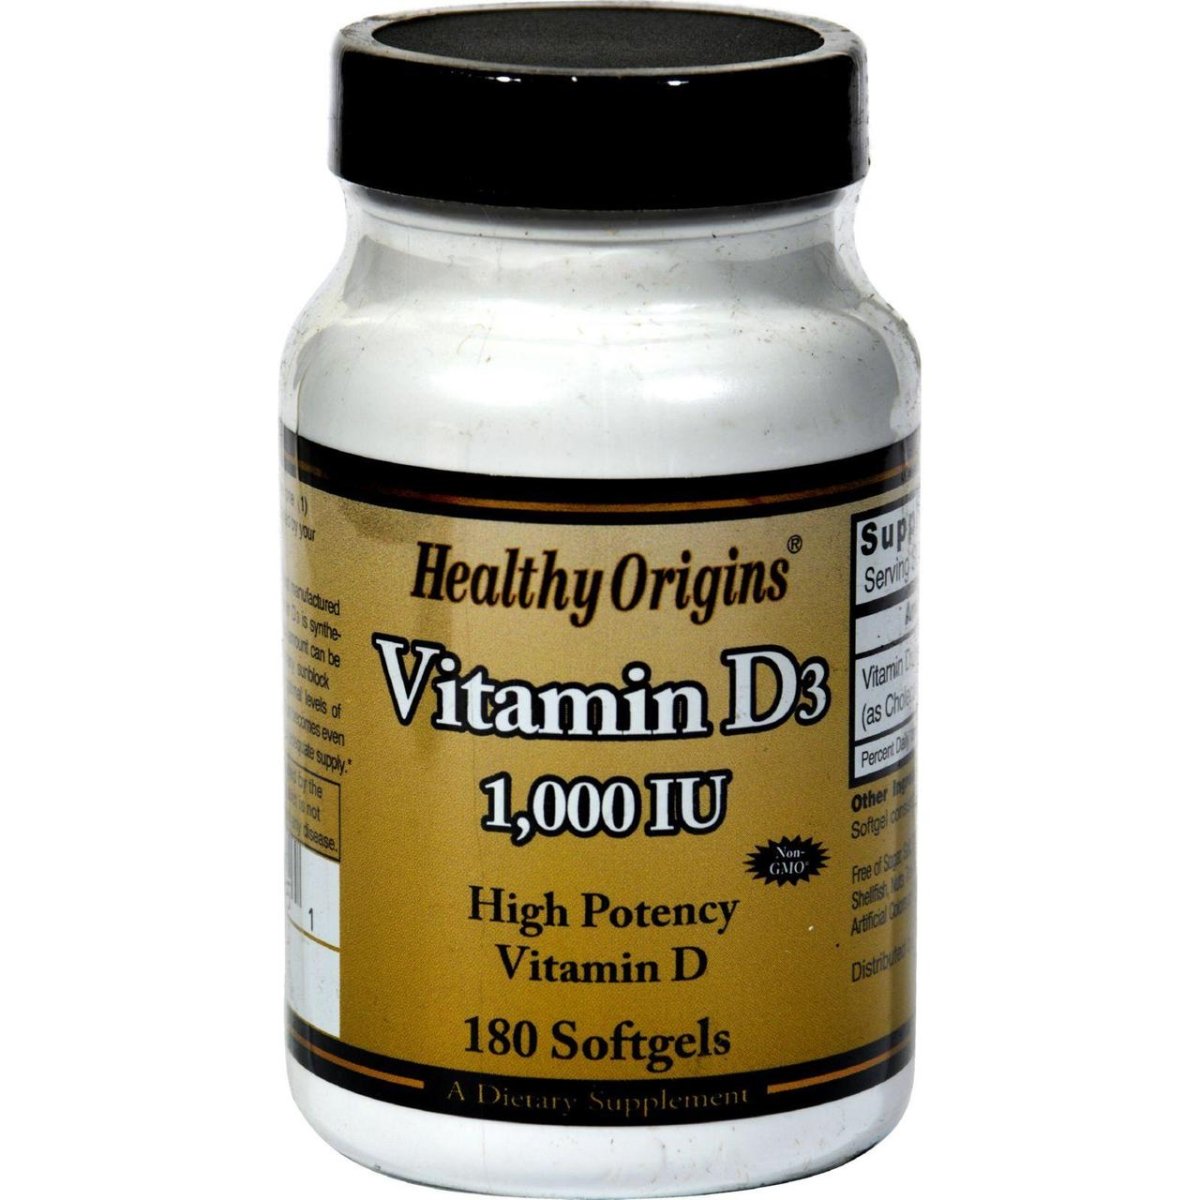 Hg1208198 Vitamin D3 - 1000 Iu, 180 Softgels